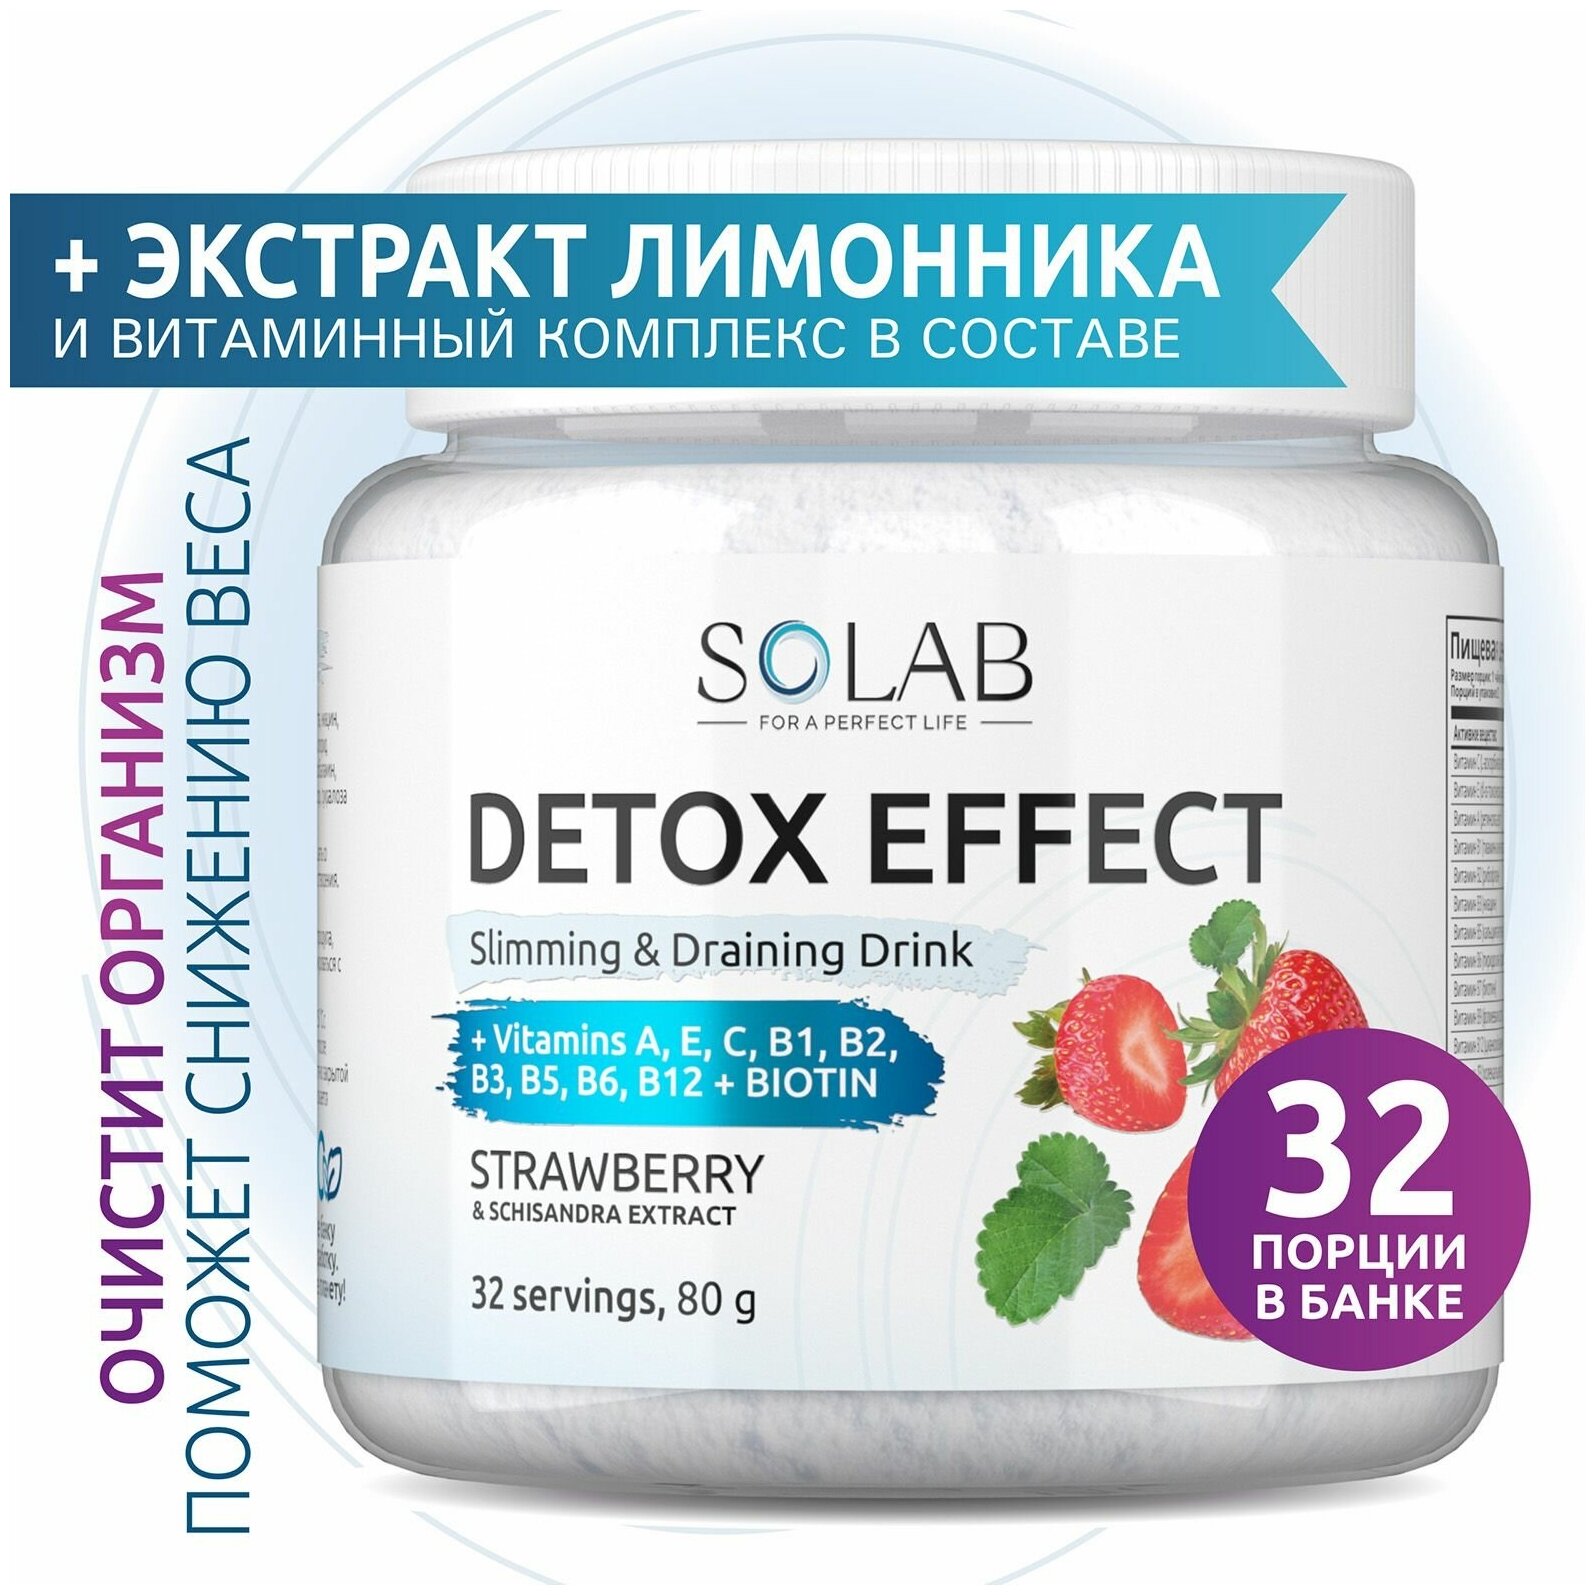 Фитококтейль детокс Detox Slim Effect со вкусом Клубники 32 порции с экстрактом лимонника для снижения веса похудения очищения экспресс-результат.